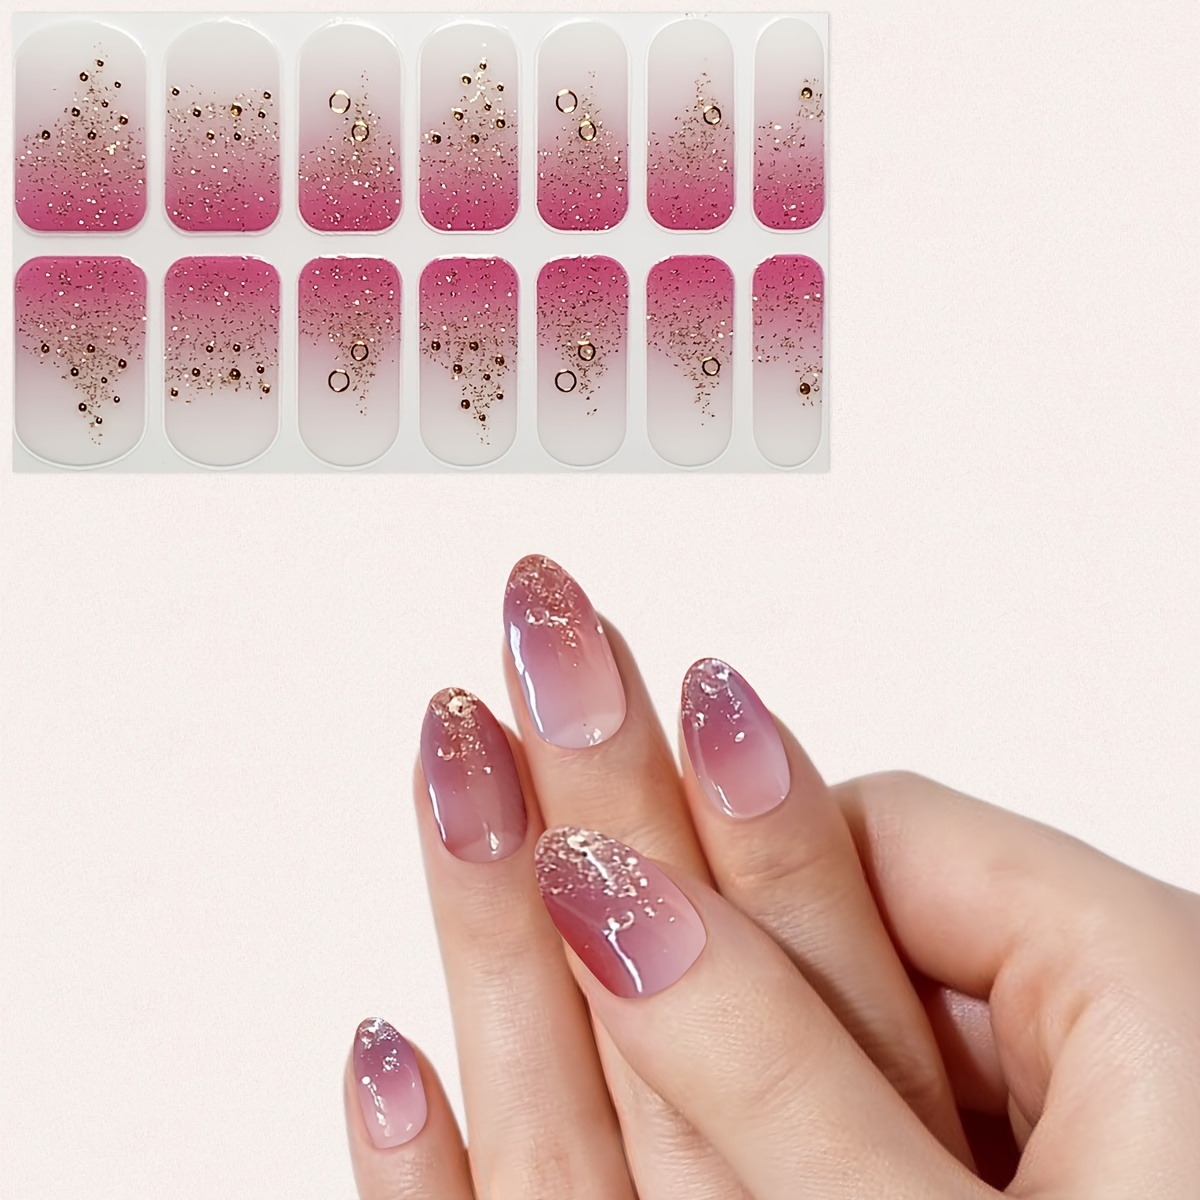 Cómo hacer Mezclas de Glitters (Fácil)  Glitter para uñas, Manicura de  uñas, Manicura